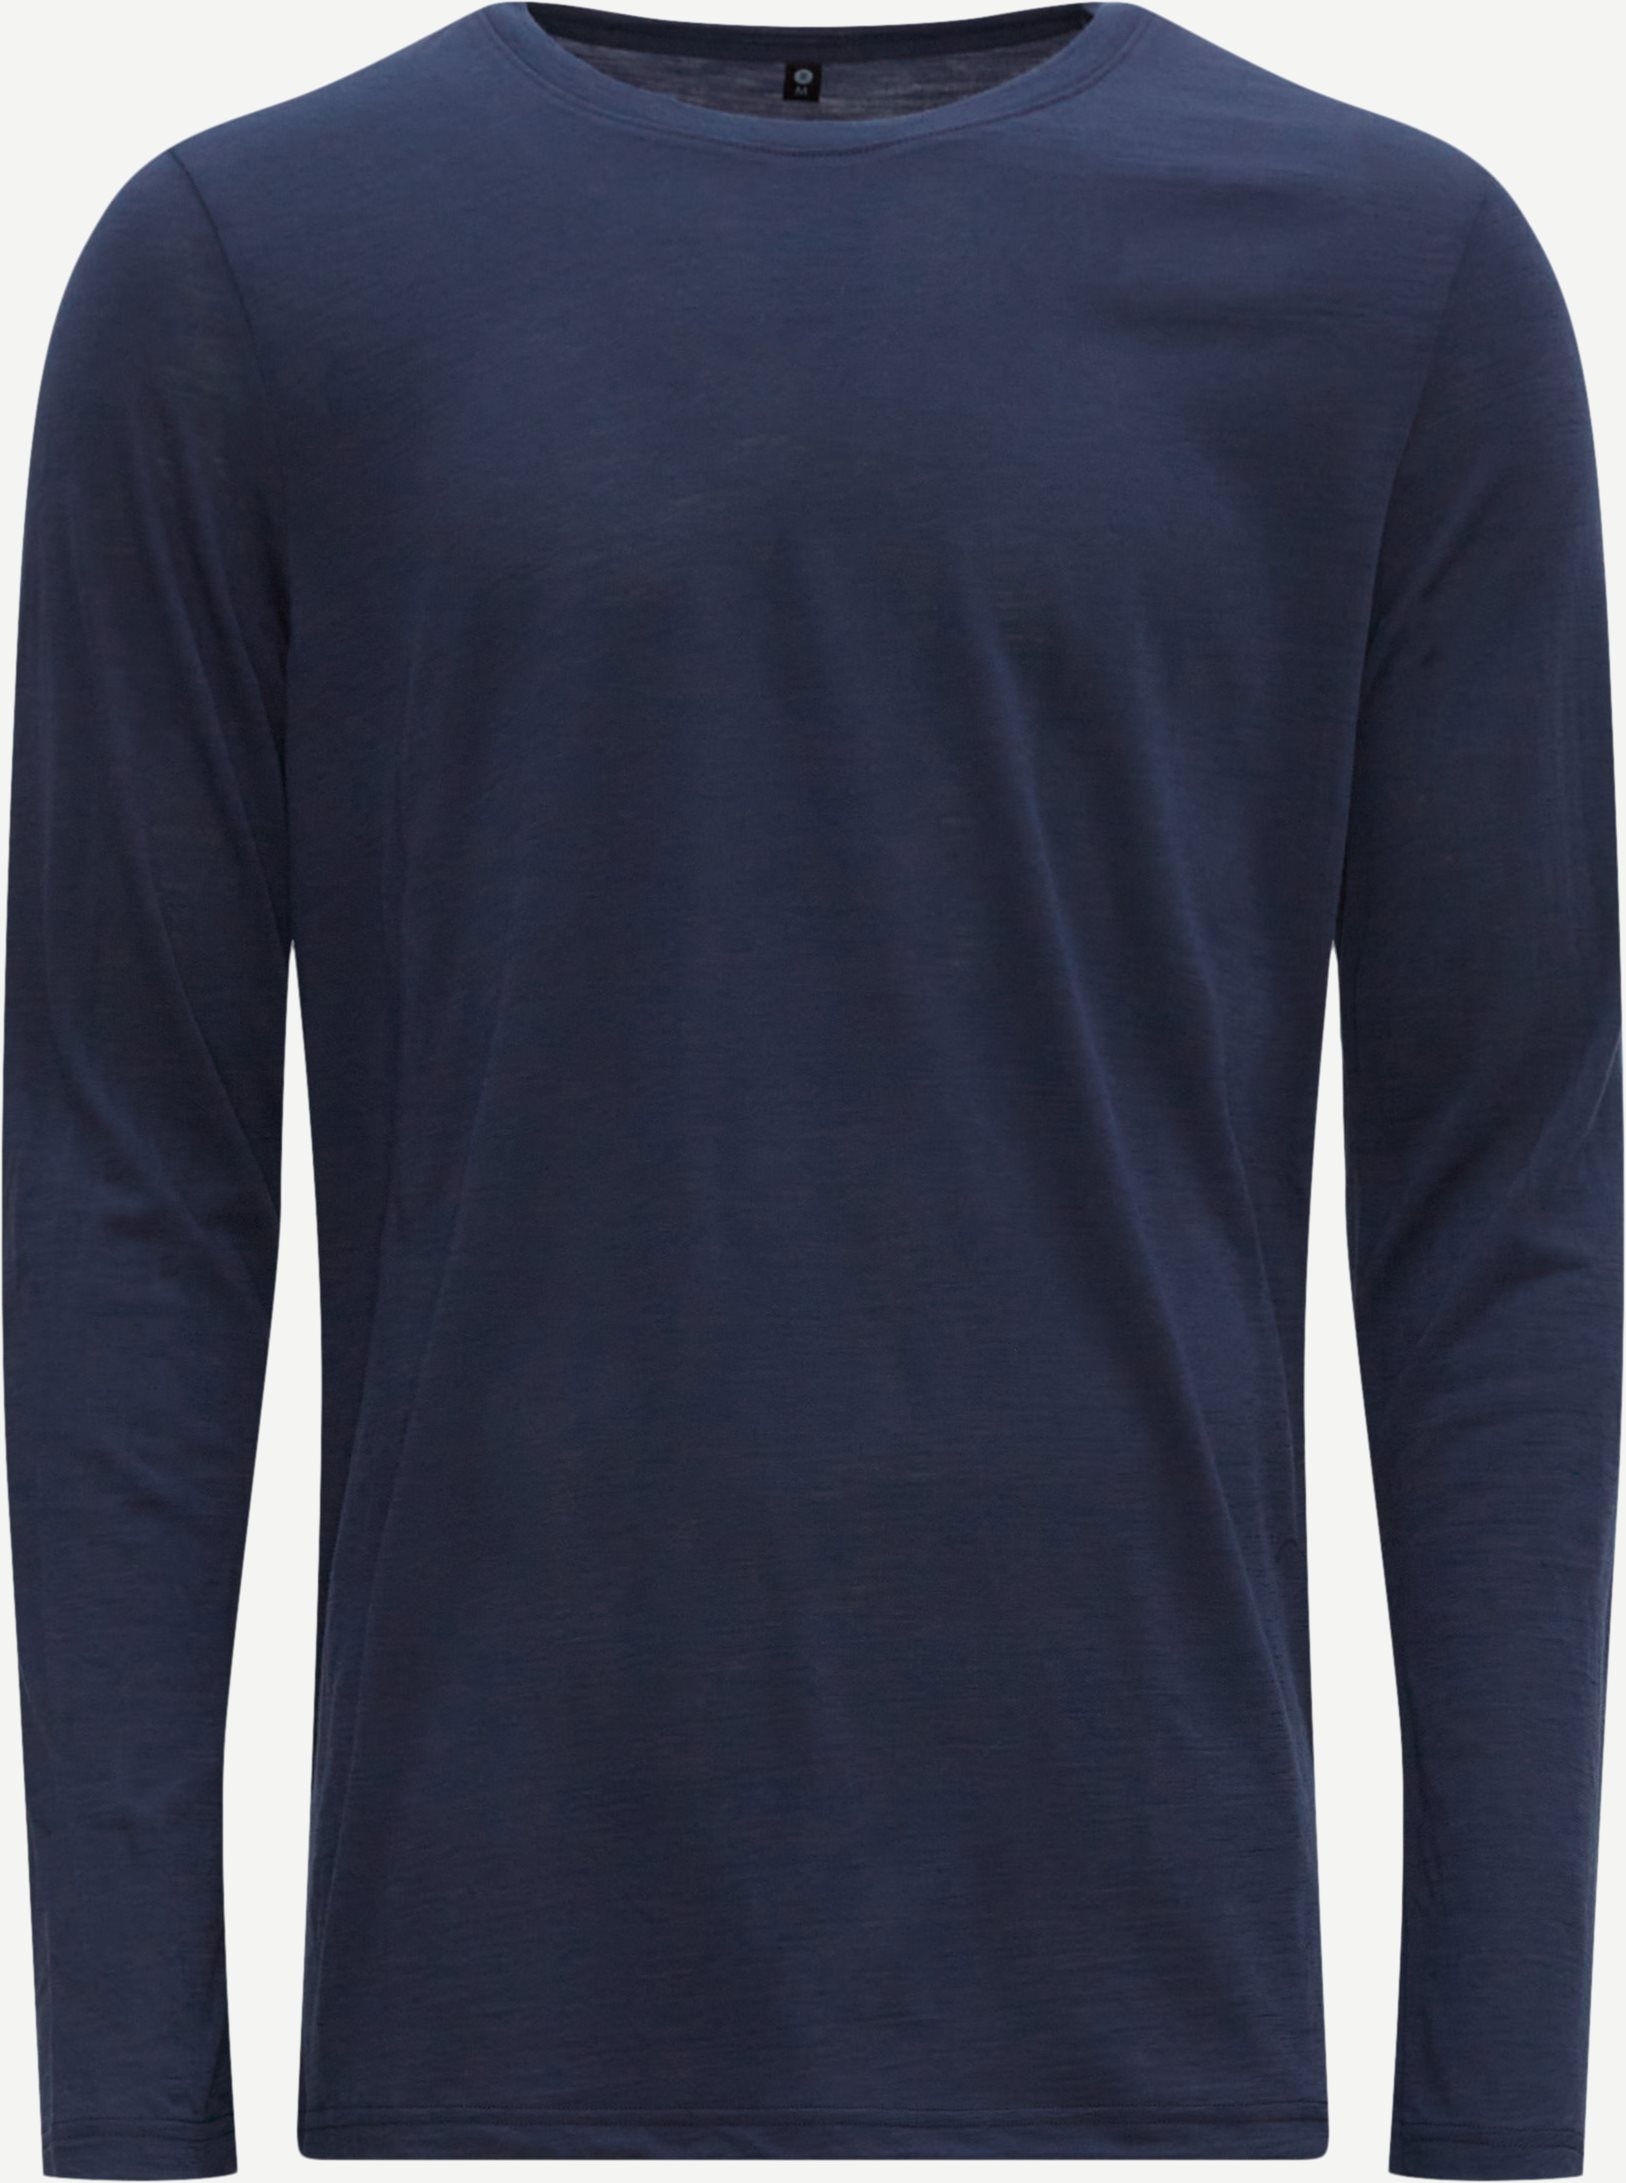 JBS of Denmark T-shirts 1150-14 LS T-SHIRT WOOL Blue